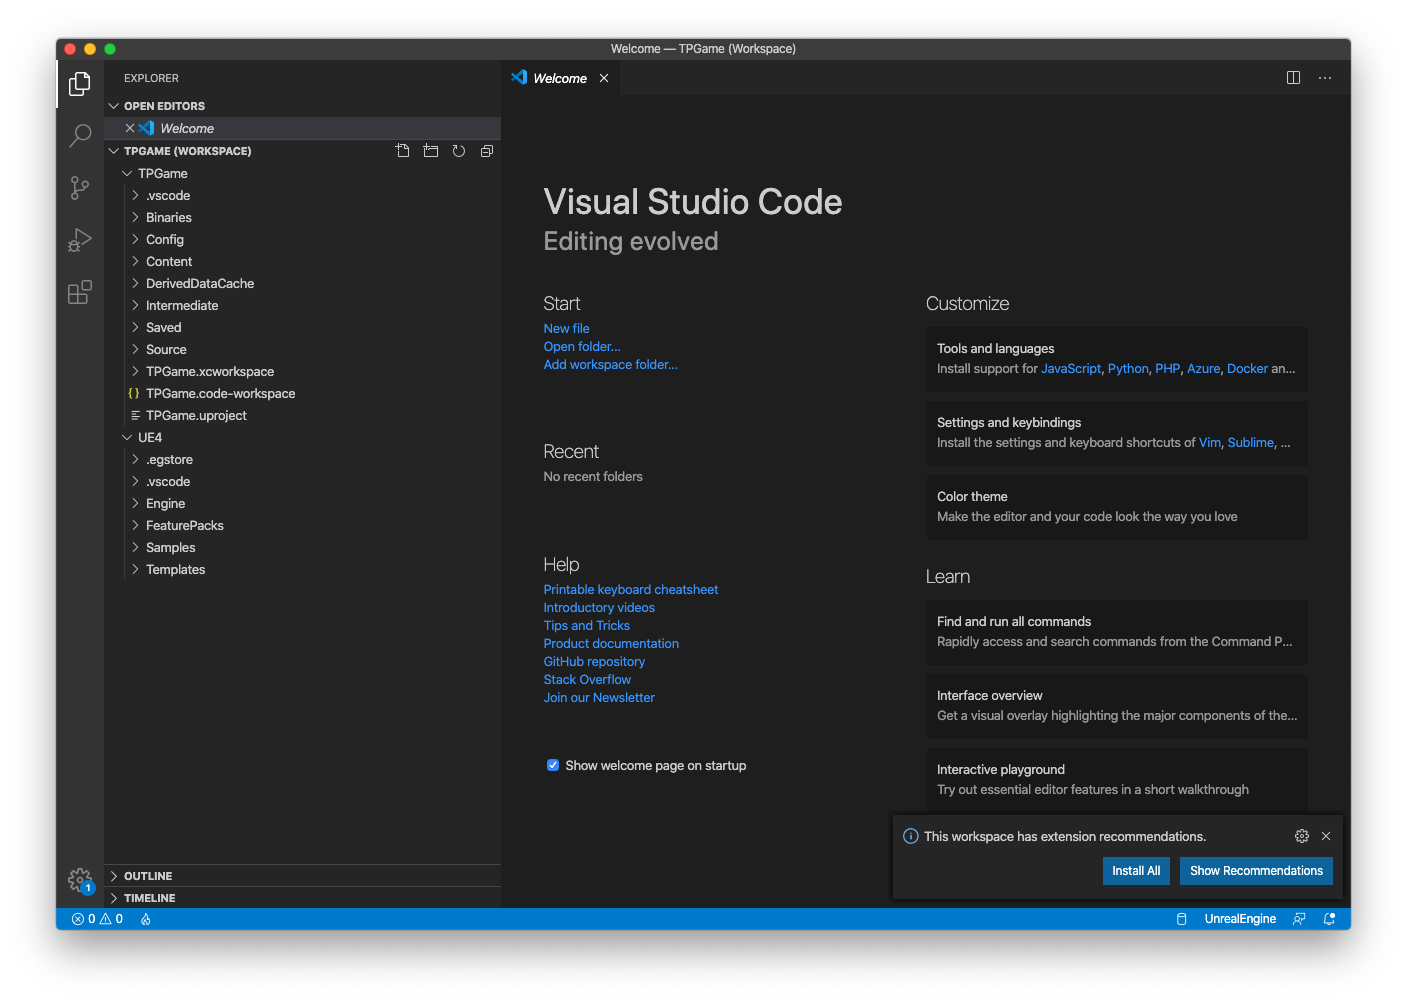 visual studio for mac vs vscode